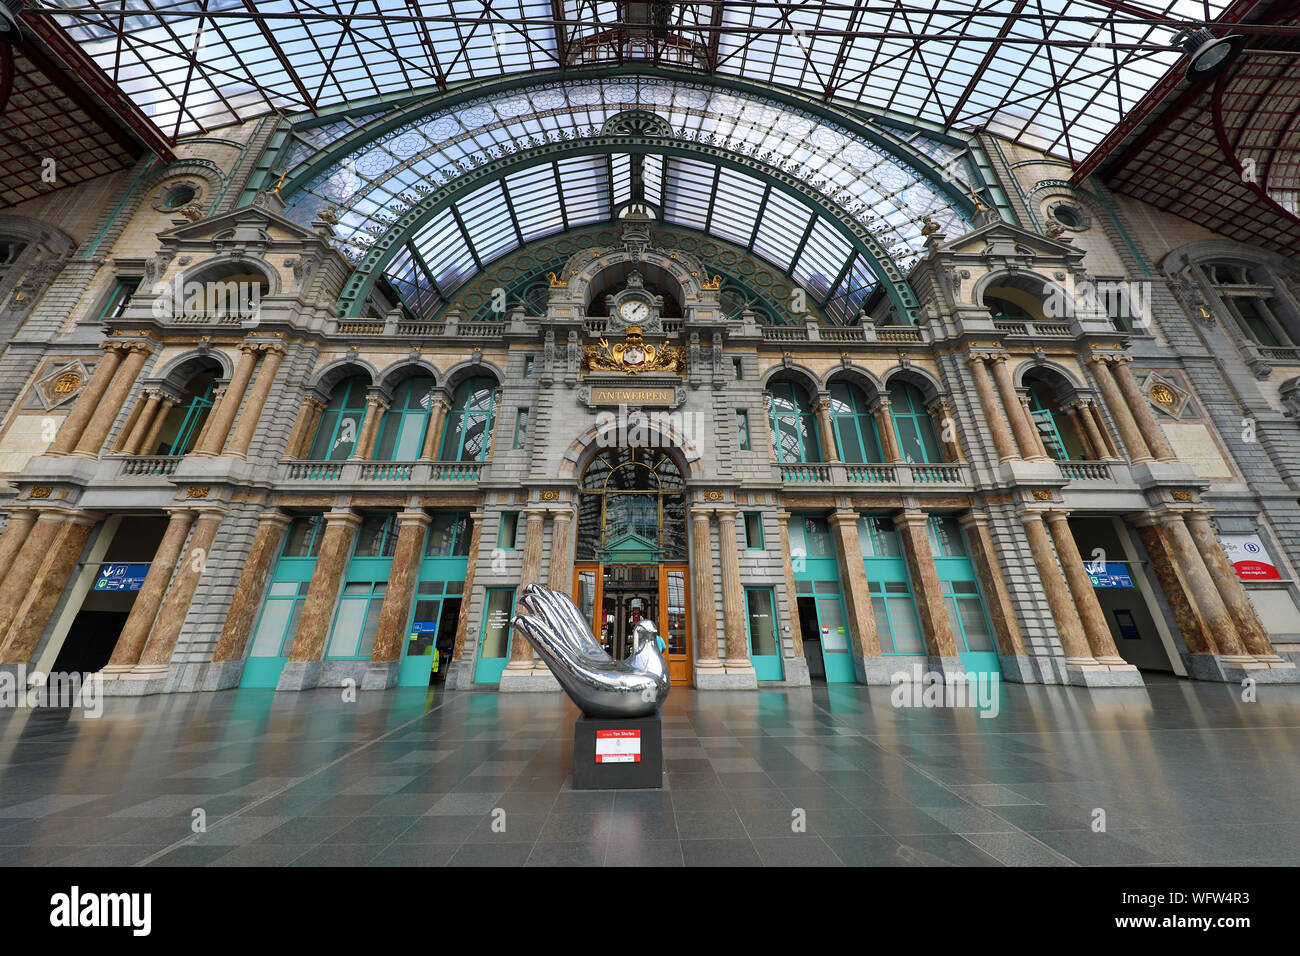 Antwerp Centraal railway station in Antwerp, Belgium Stock Photo